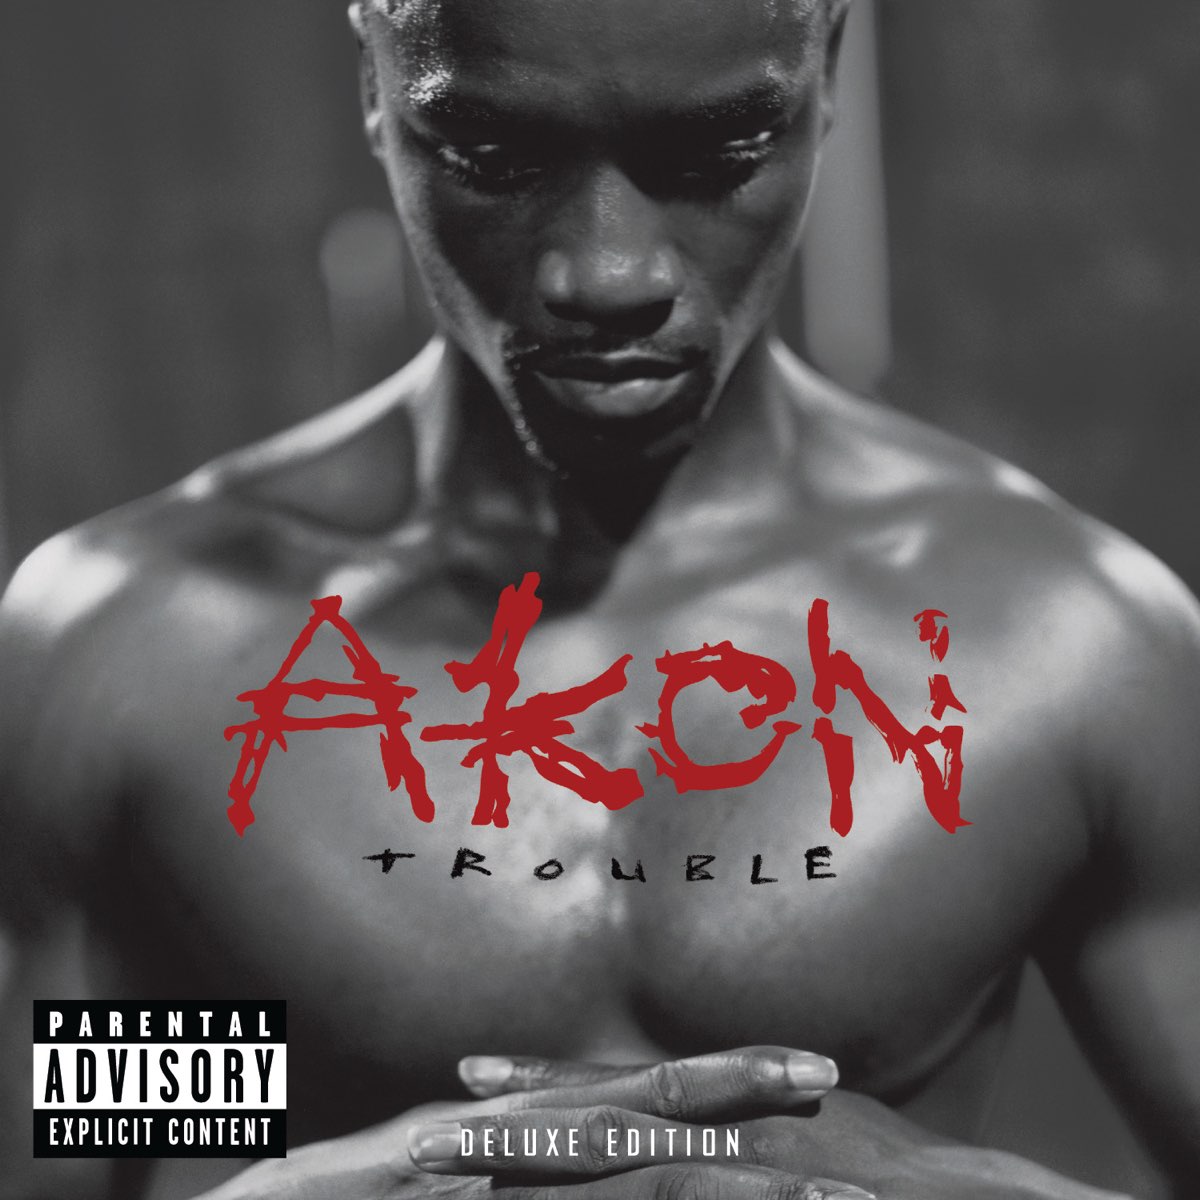 Trouble (Deluxe Edition) par Akon sur Apple Music